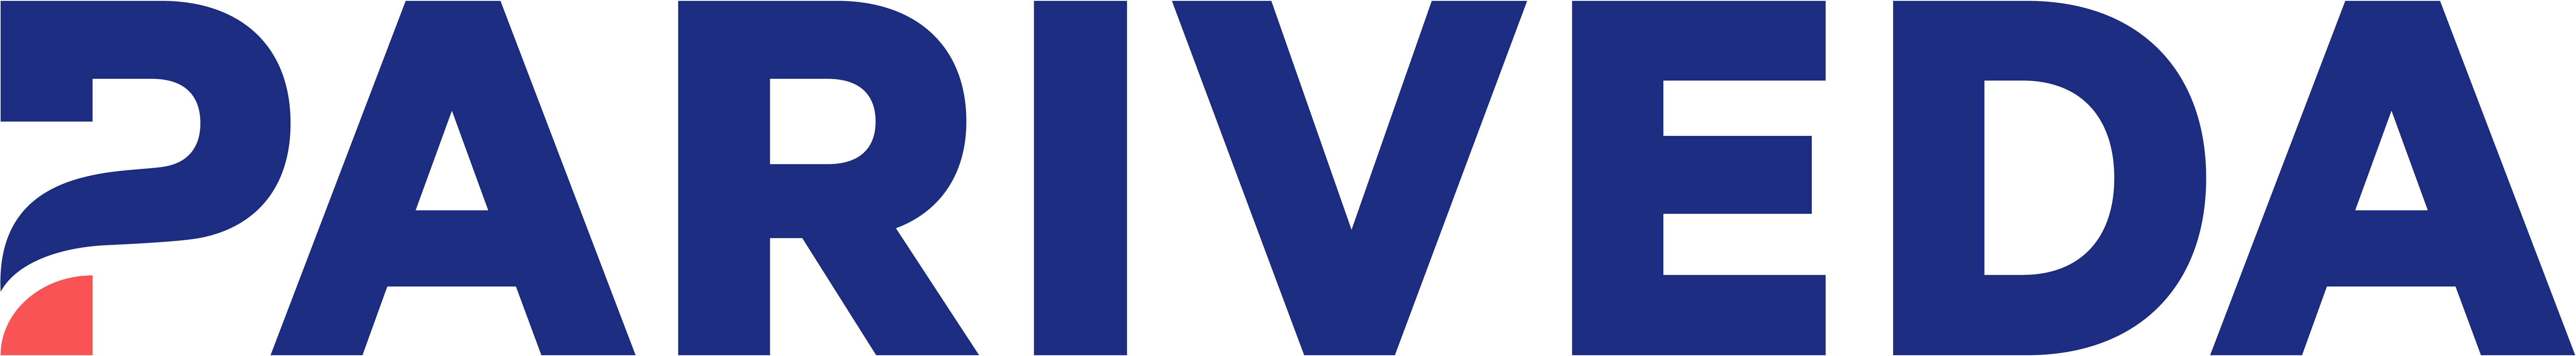 Pariveda Company Logo